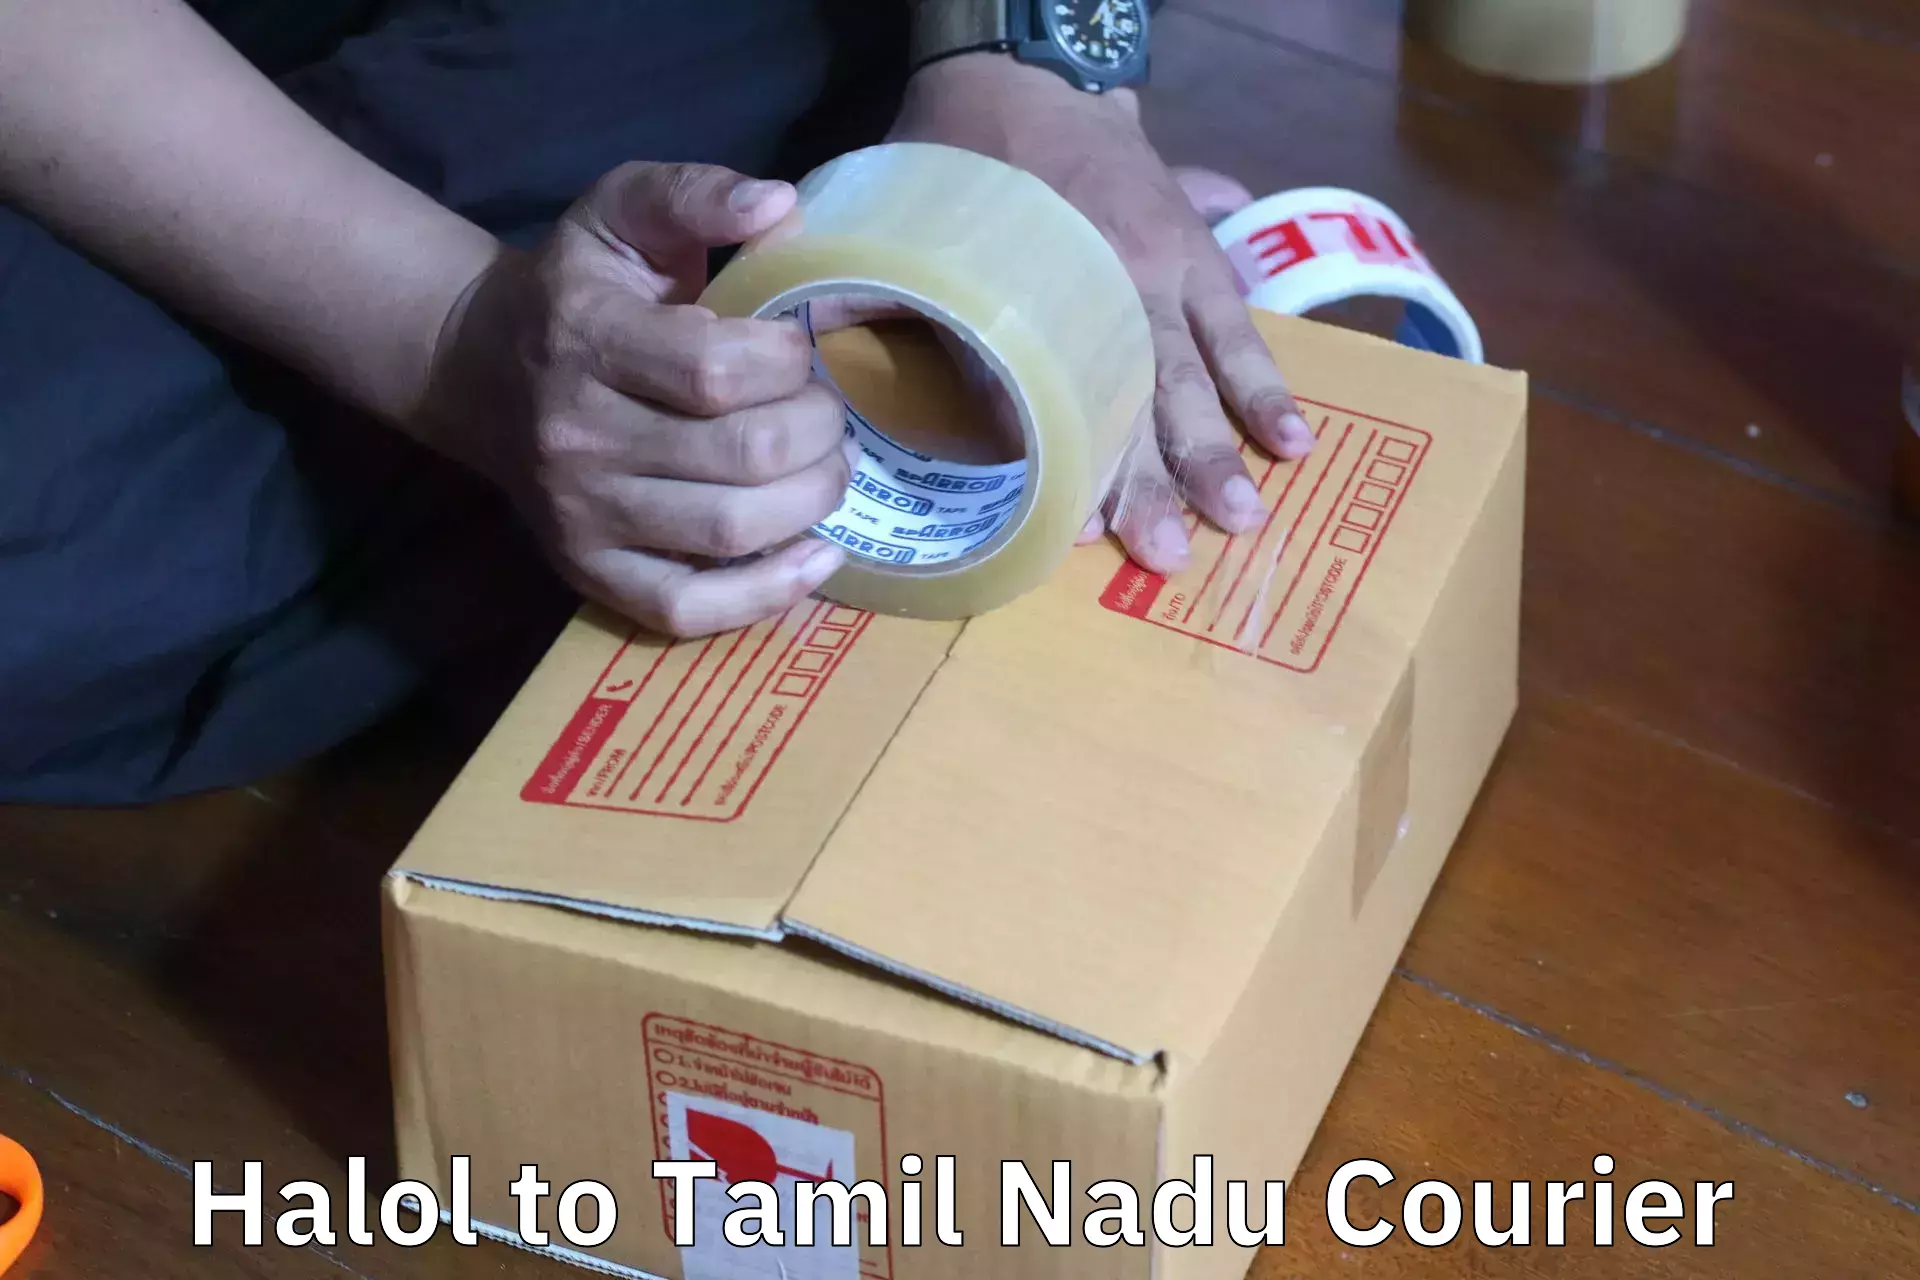 Furniture delivery service Halol to Perambur